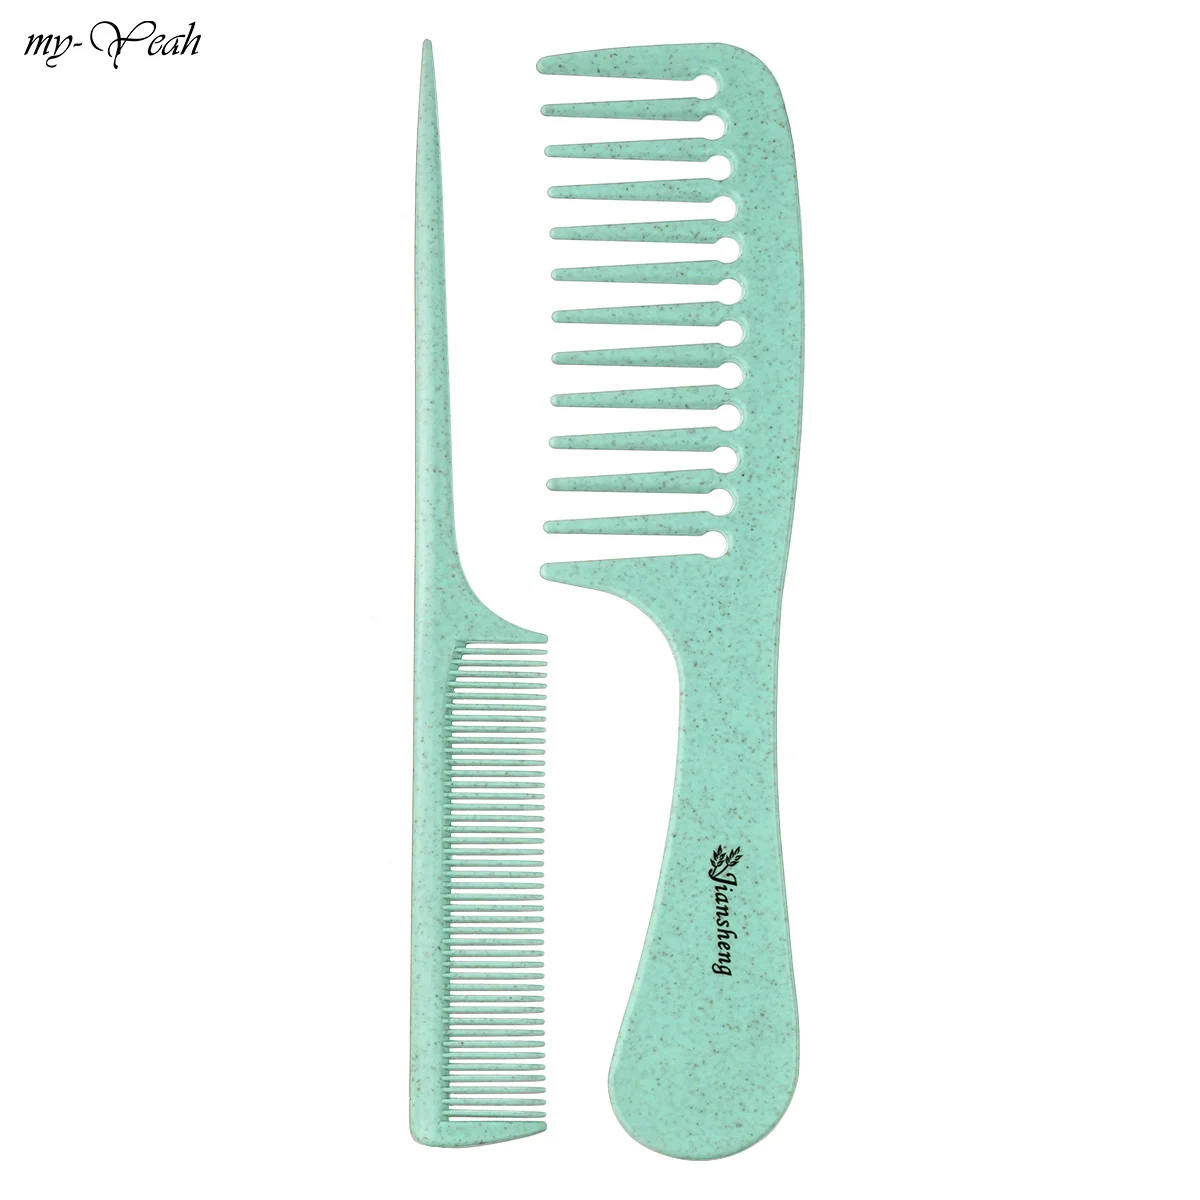 2 шт./компл. Анти-статический парикмахерские широкие/тонкой зуб расчески для салона для стрижки волос Detangling парикмахерские щетки для волос инструмент для укладки волос - Цвет: green